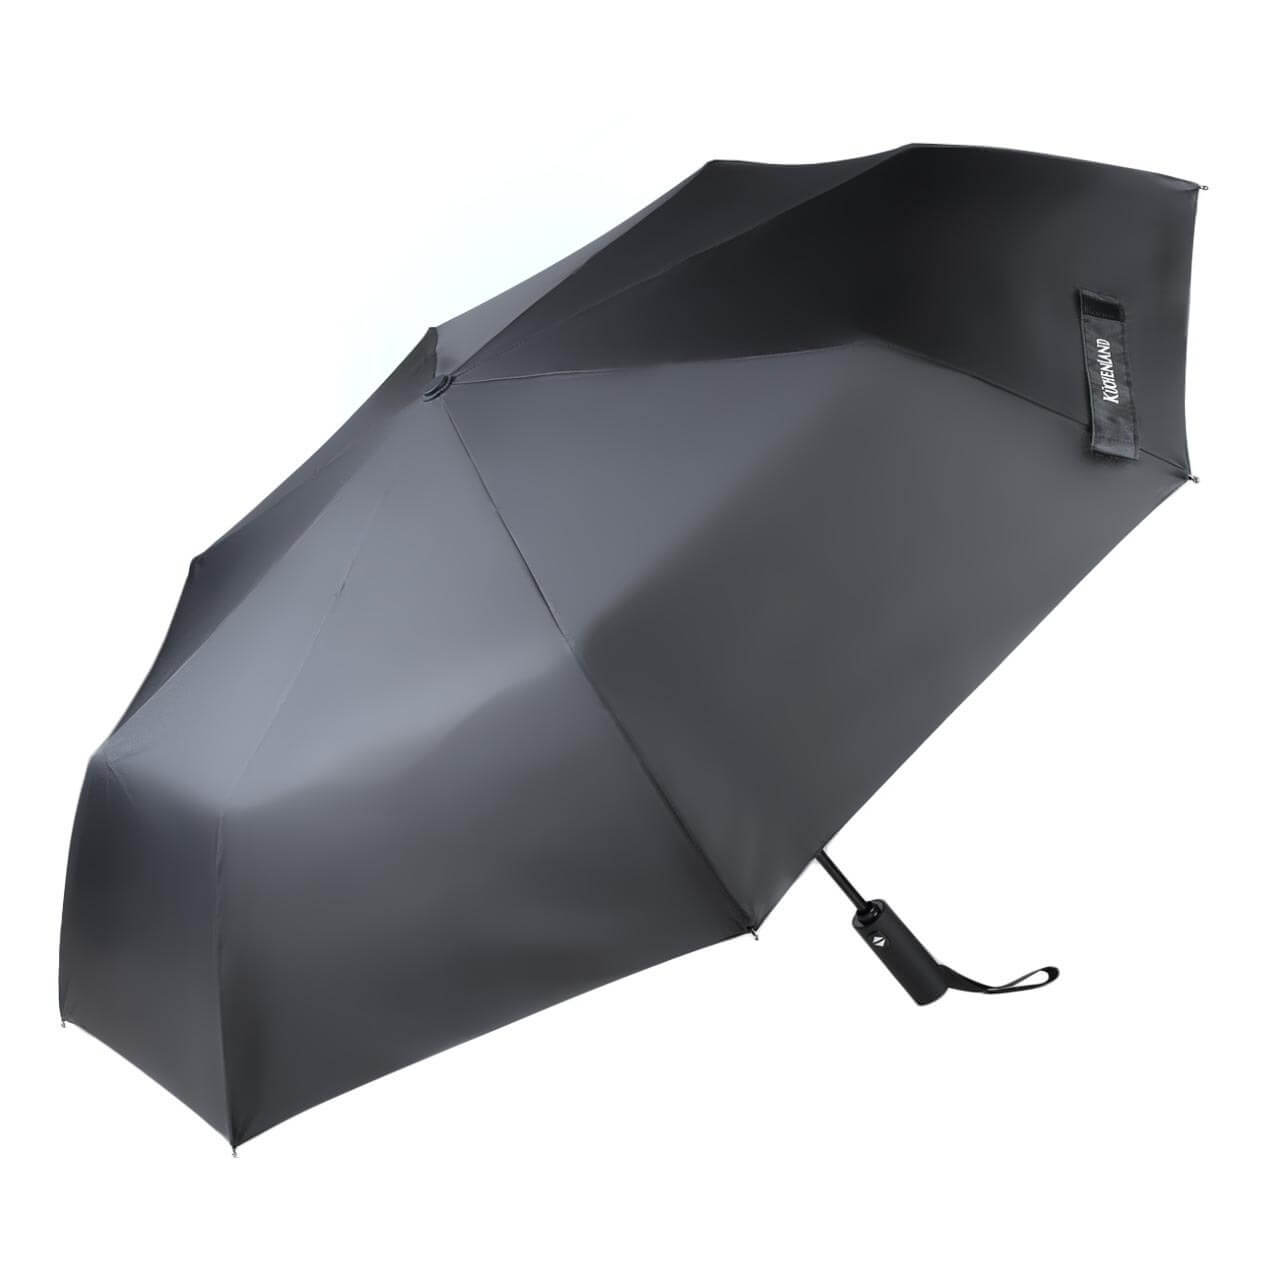 Зонт, 58 см, складной, автоматический, эпонж, черный, Rainy складной мягкий металлический стул ццц стулья сайт